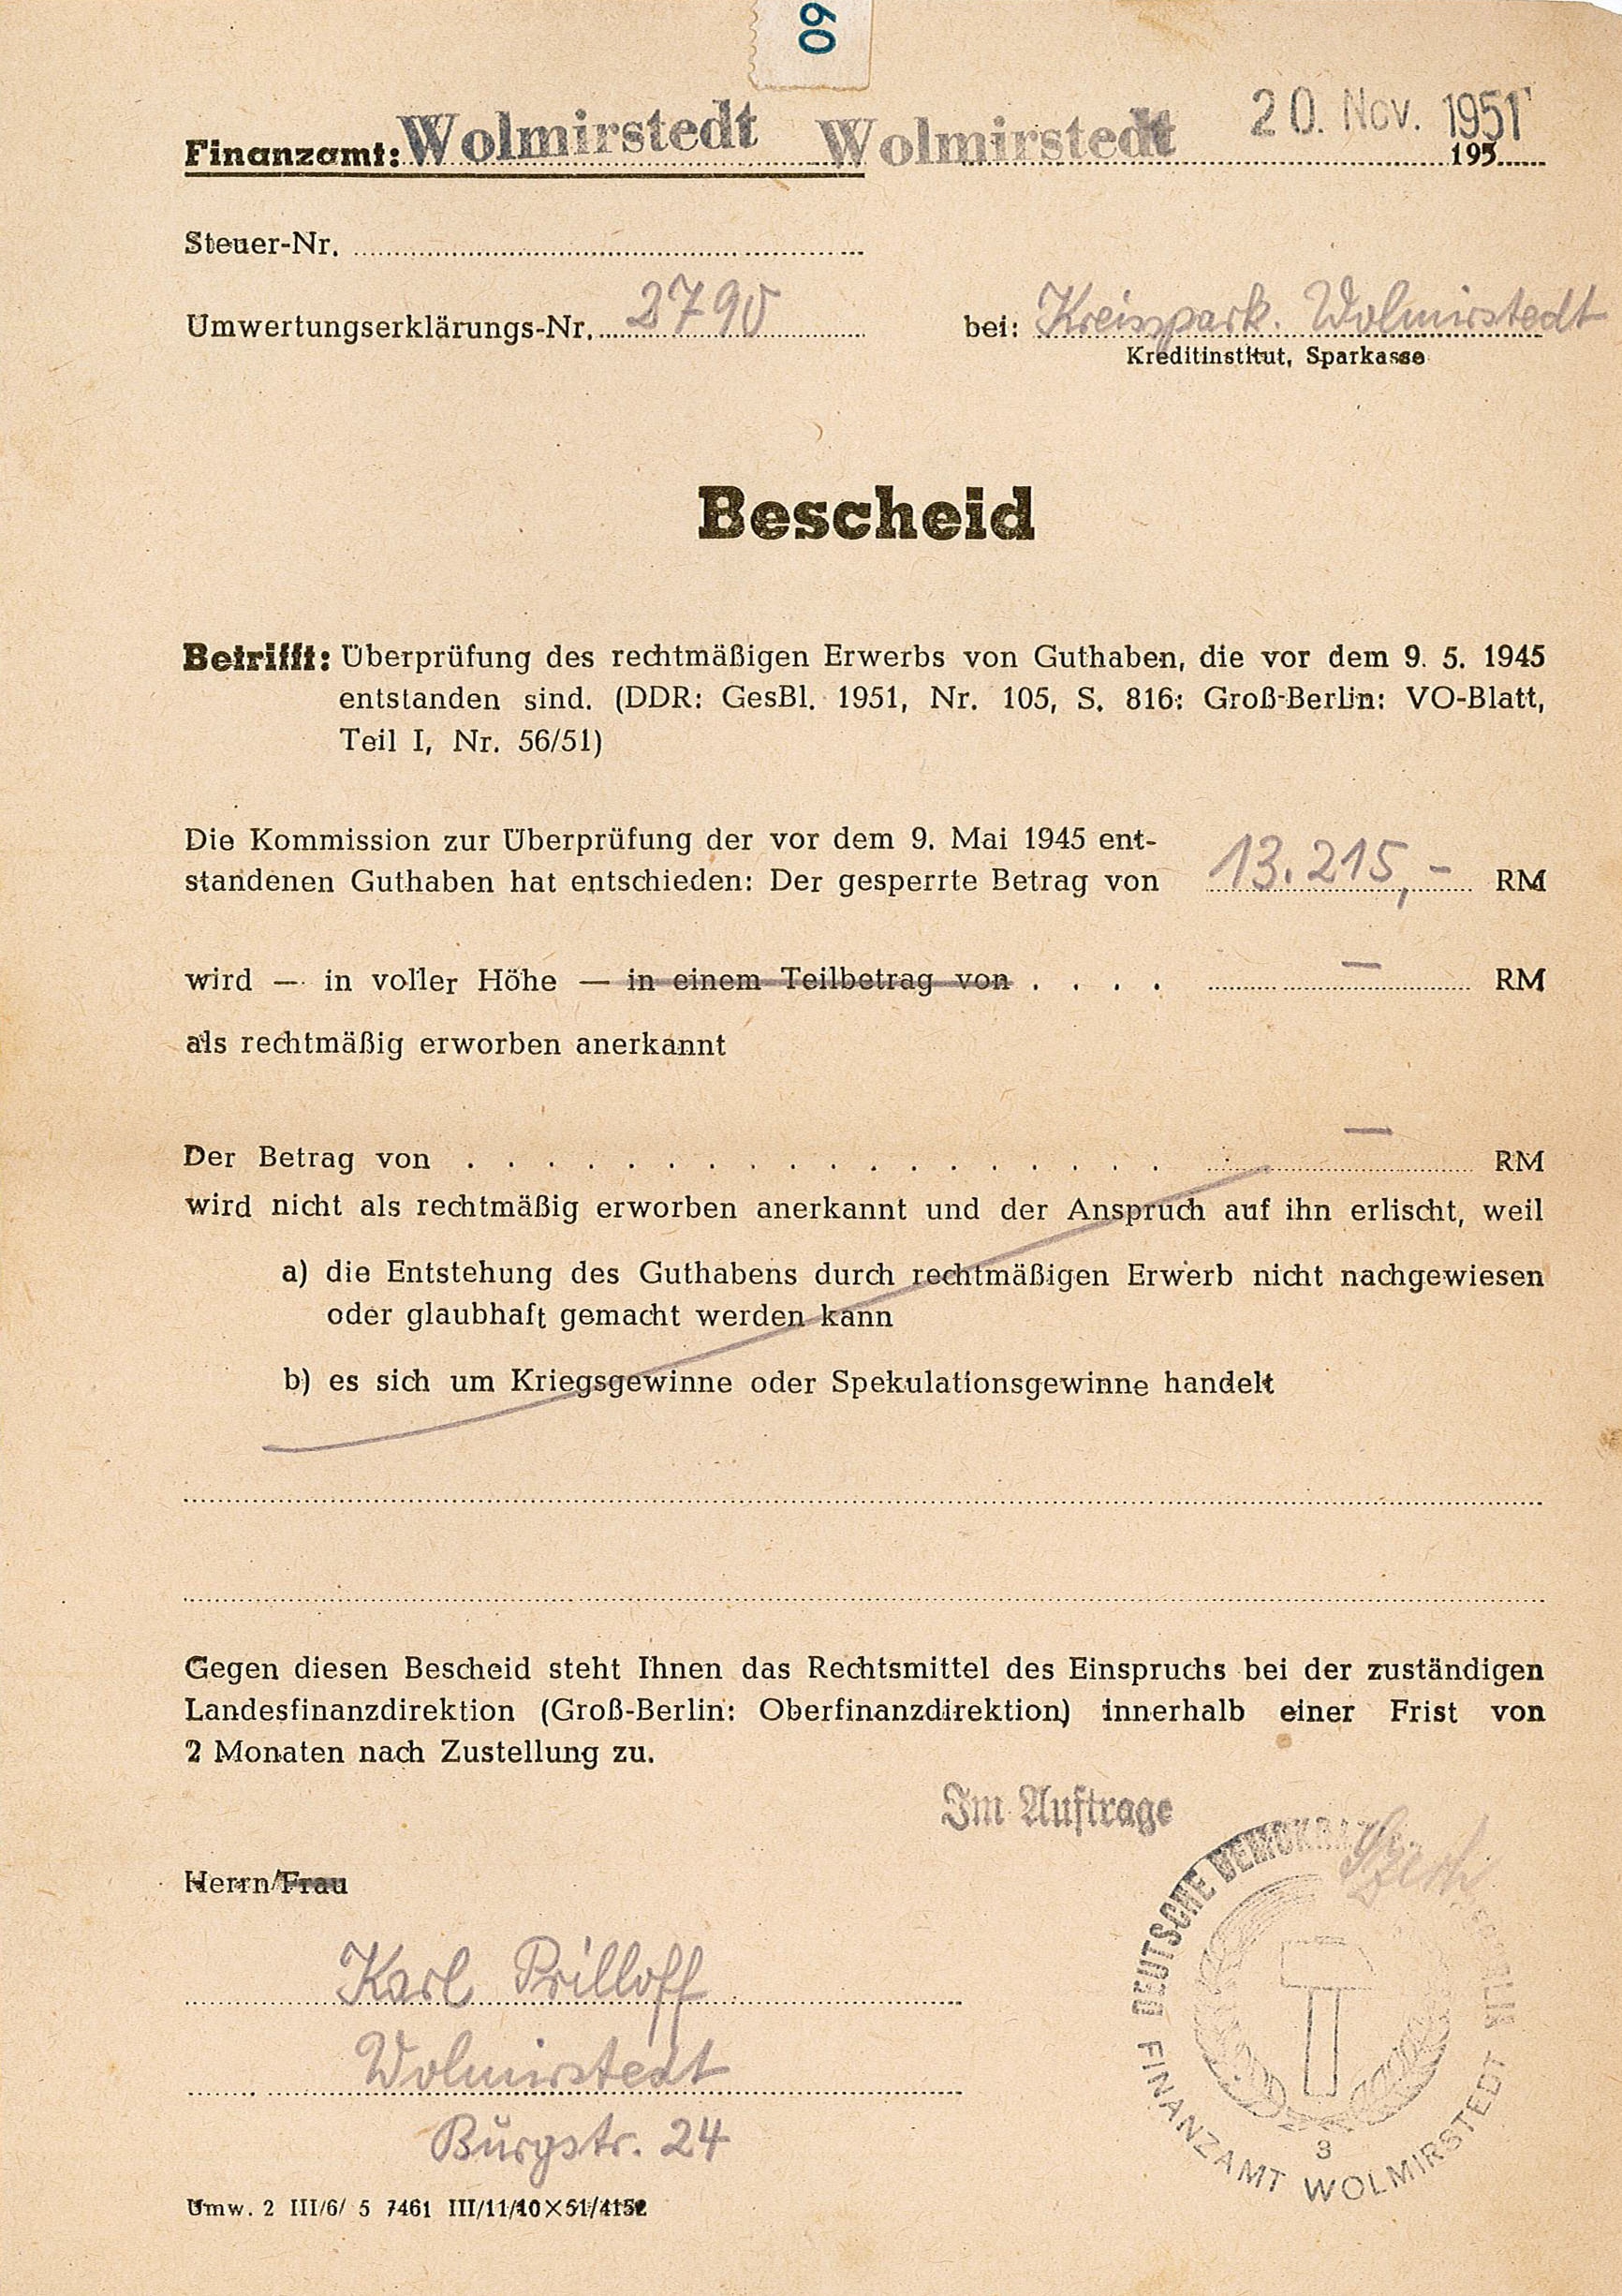 Bescheid des Finanzamtes für Karl Prilloff, 20.11.1951 (Museum Wolmirstedt RR-F)